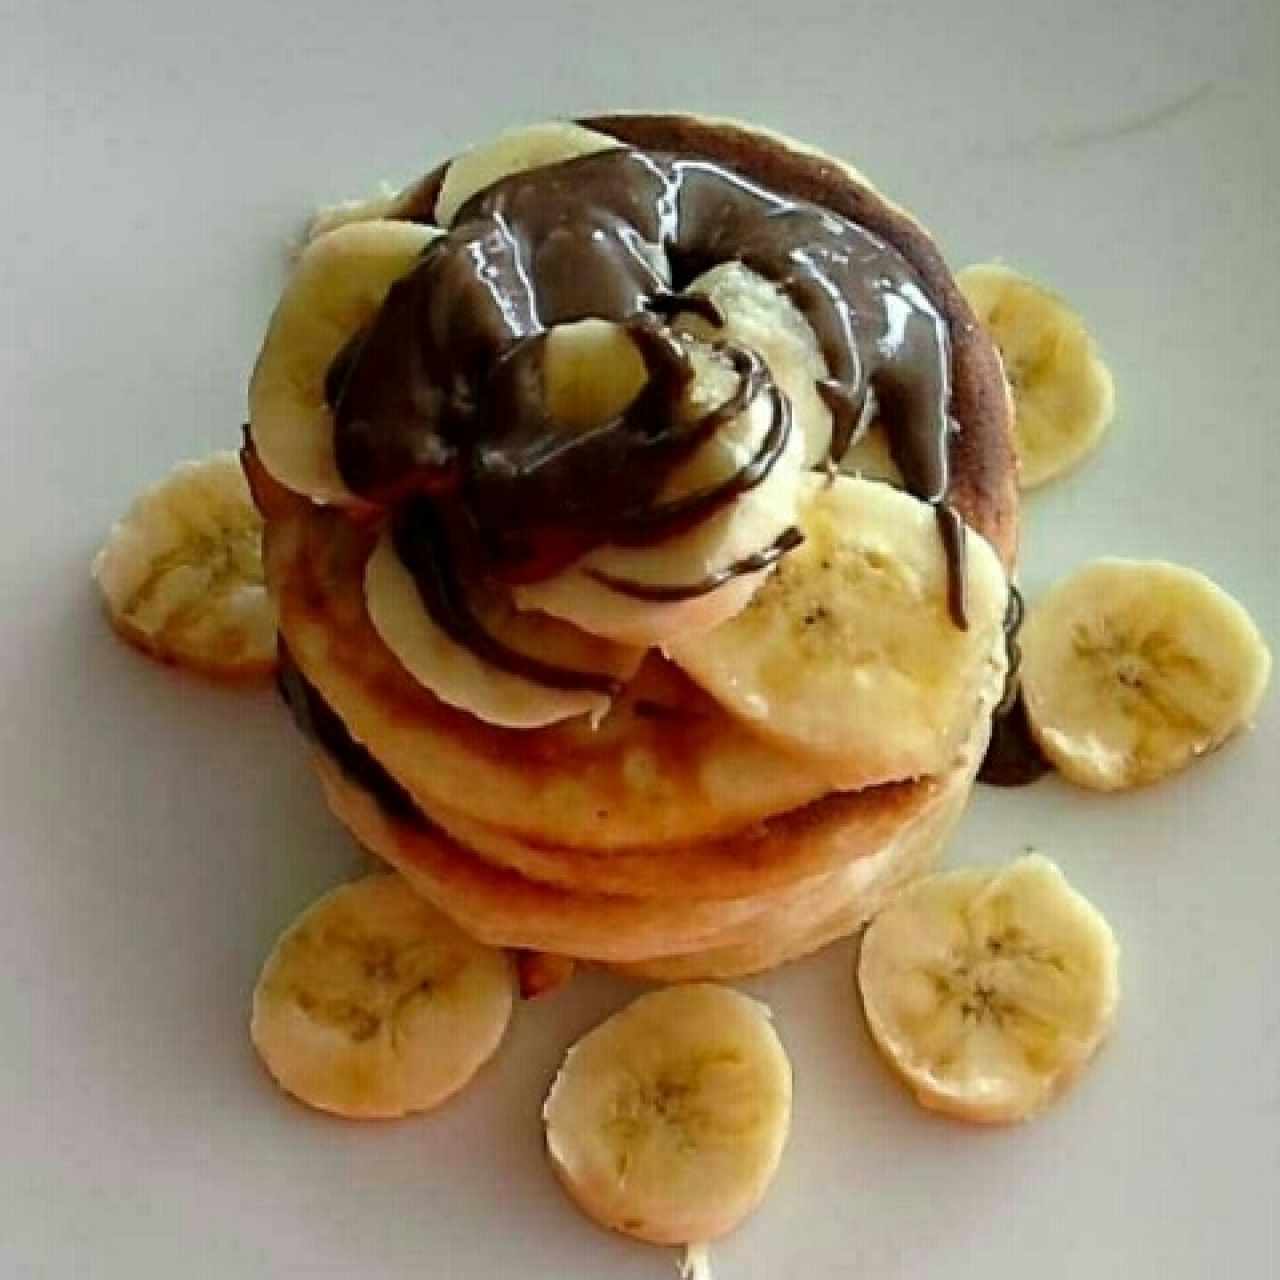 panquecas de nutella y banana